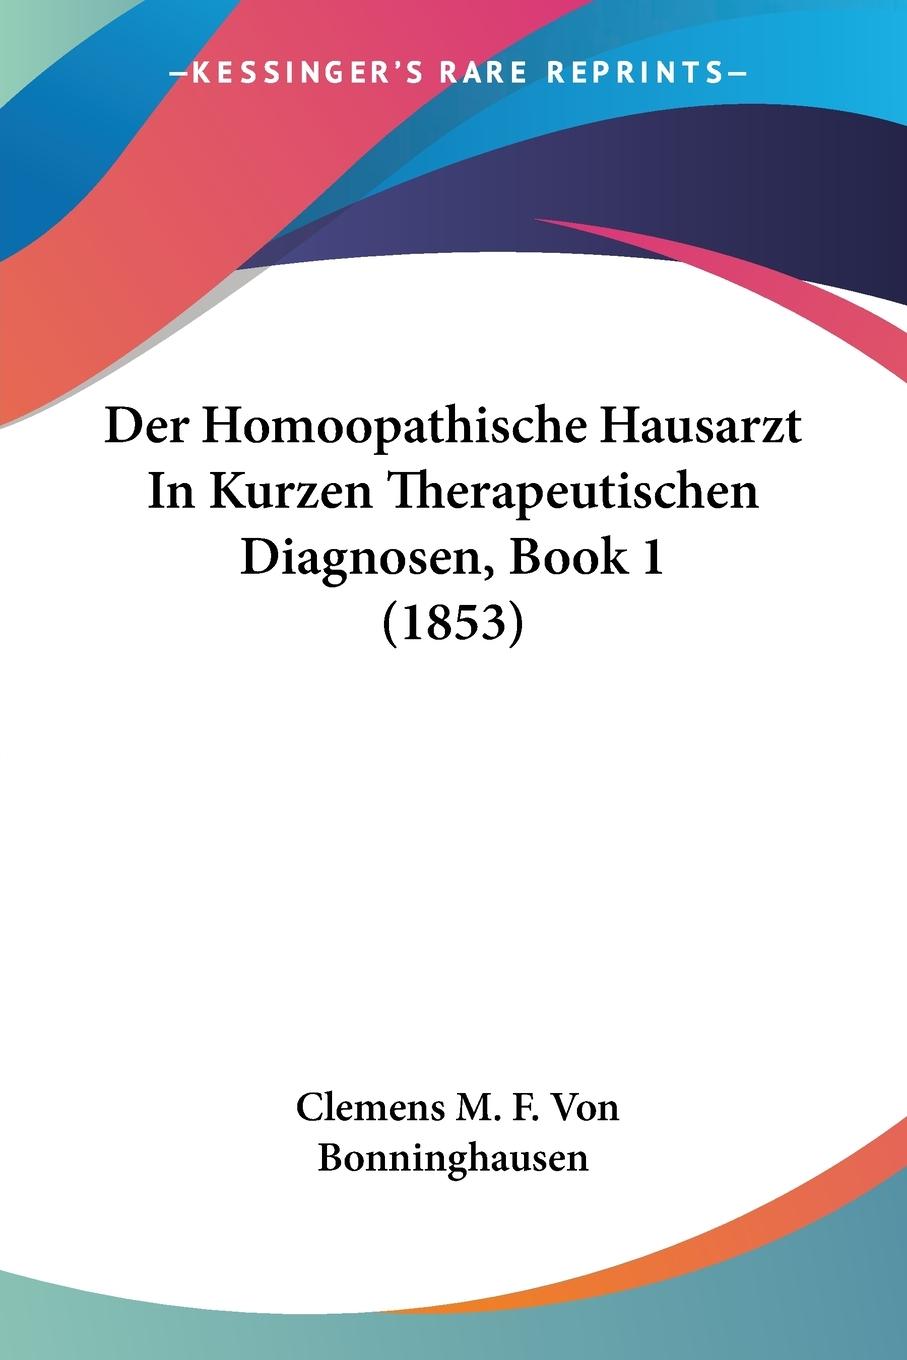 Der Homoopathische Hausarzt In Kurzen Therapeutischen Diagnosen, Book 1 (1853) - Bonninghausen, Clemens M. F. Von